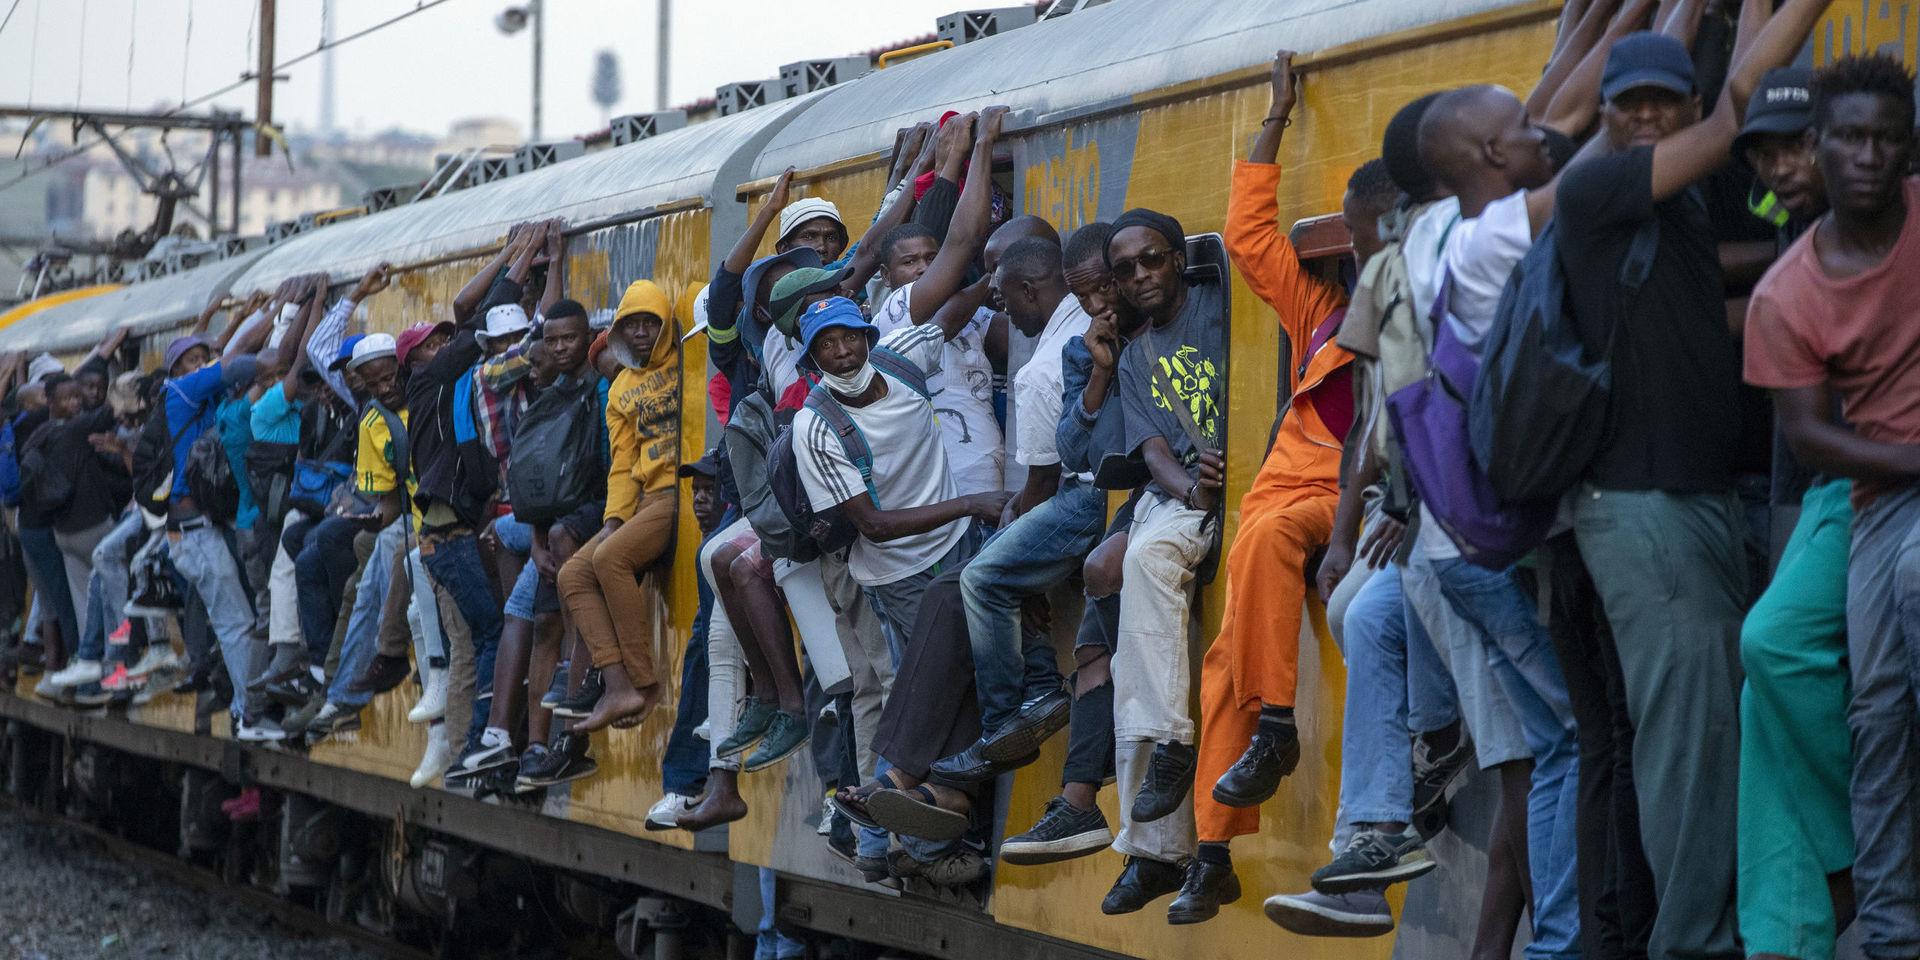 Trots viruslarm är tåget i sydafrikanska Soweto är som vanligt överfullt. I ekonomiskt utsatta områden har människor inte råd att sluta arbeta även om det kan minska smittspridningen, varnar hjälporganisationer. 